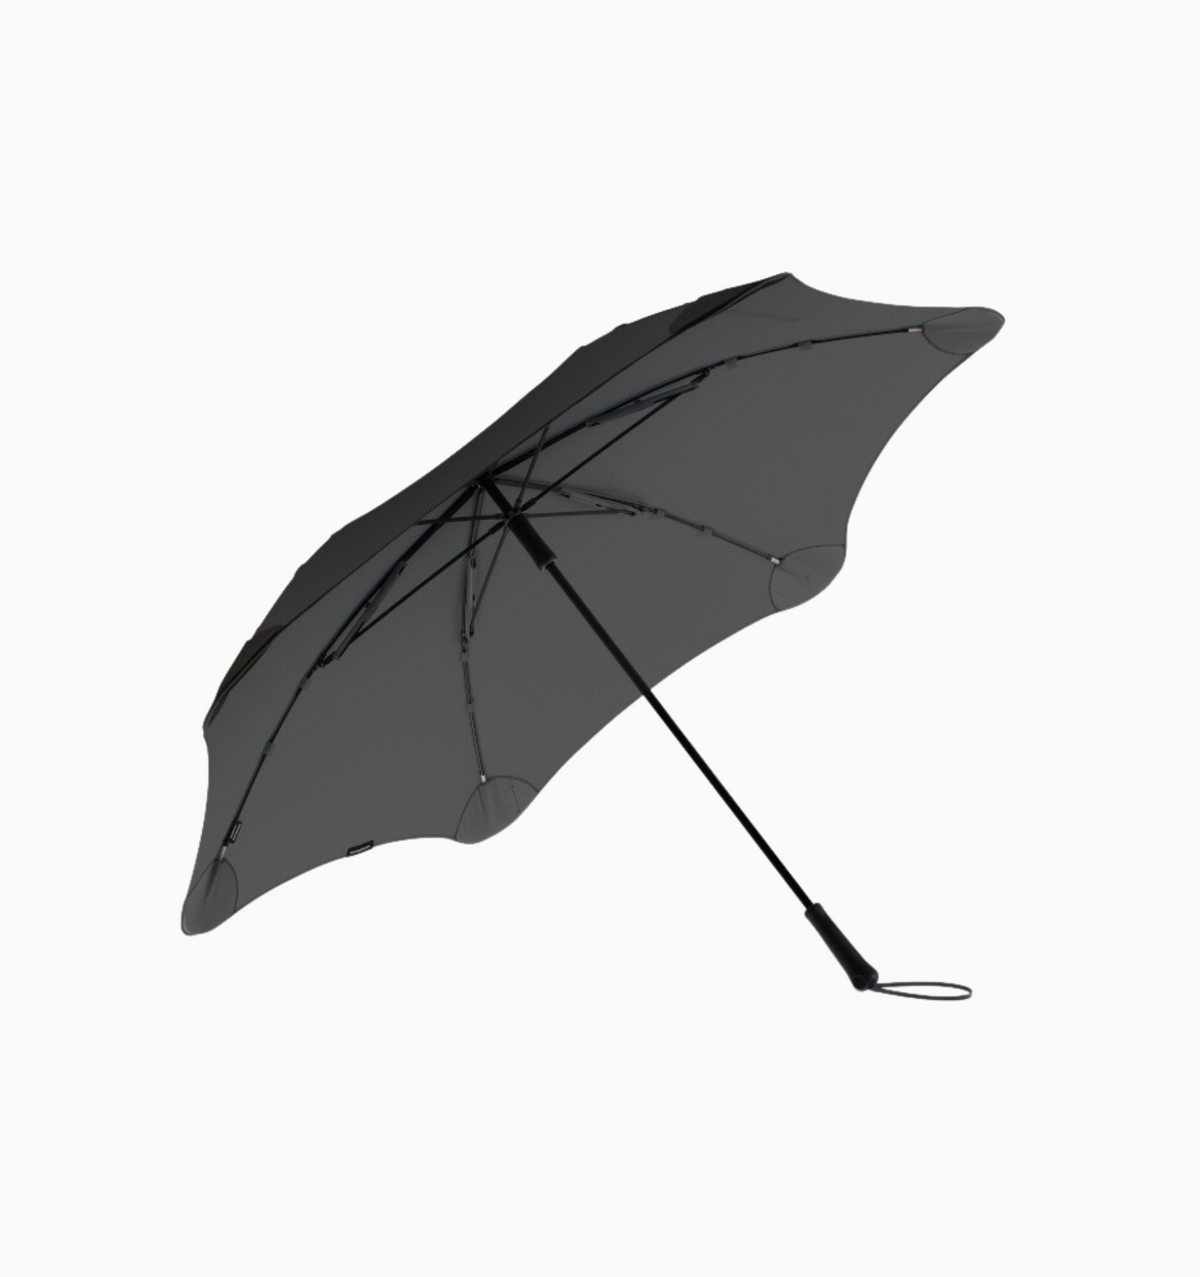 Blunt Exec Umbrella - Charcoal